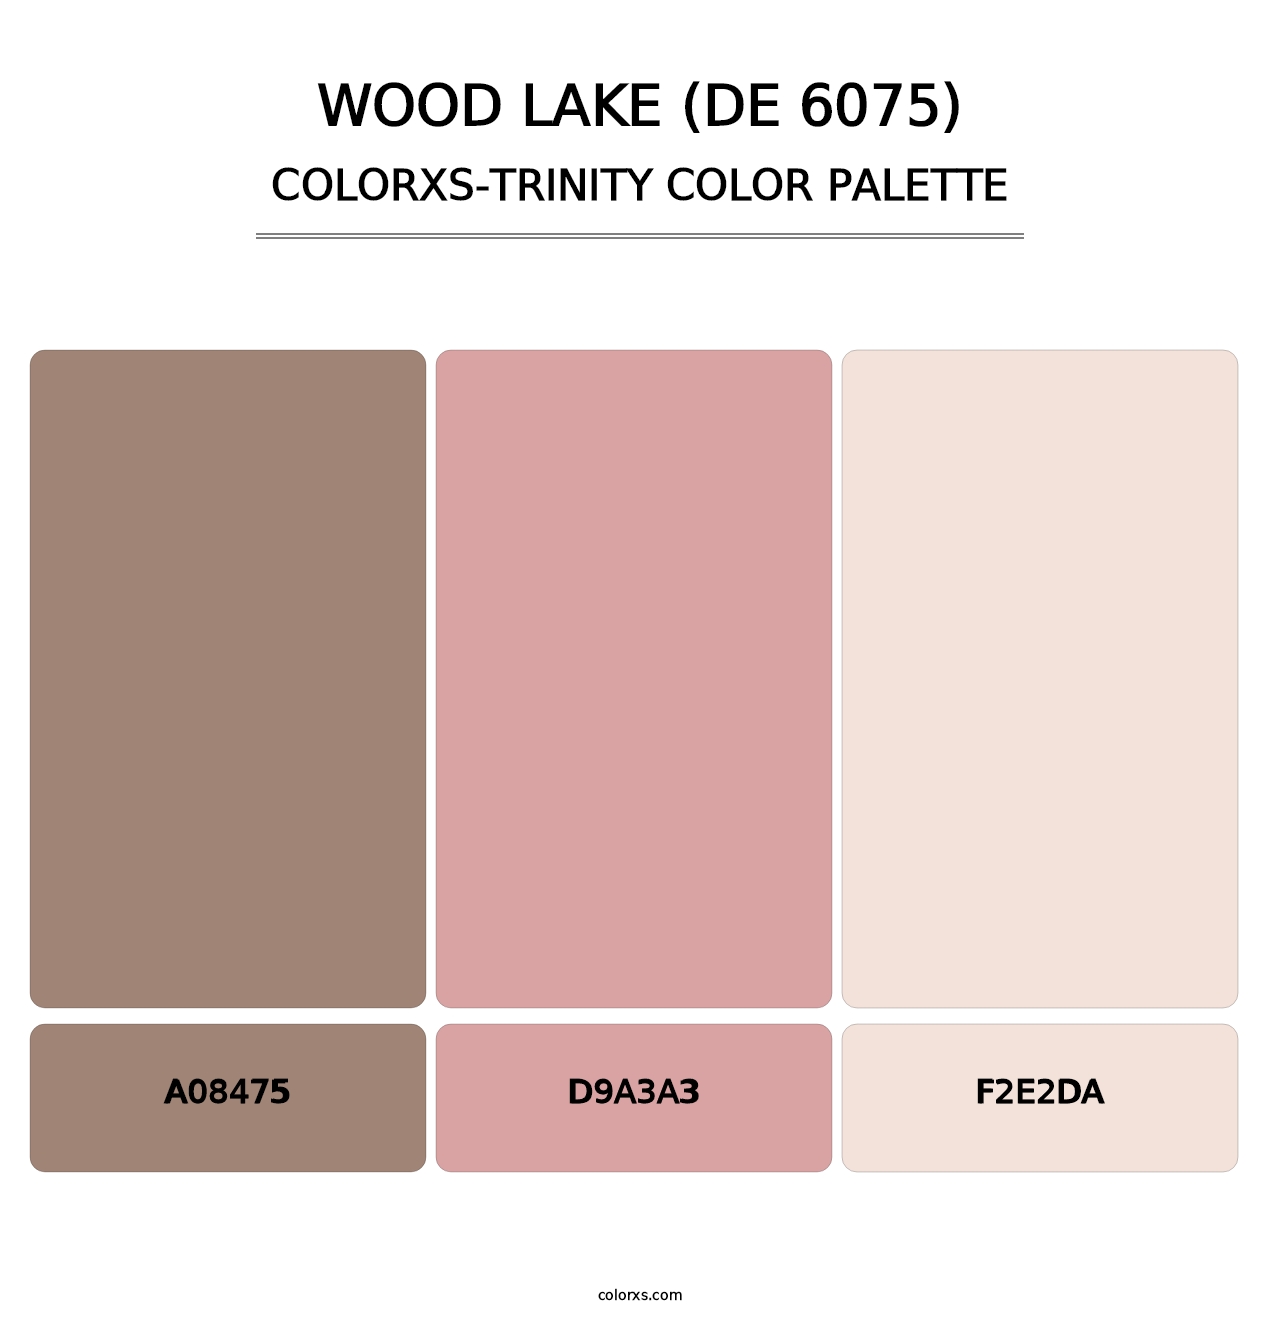 Wood Lake (DE 6075) - Colorxs Trinity Palette